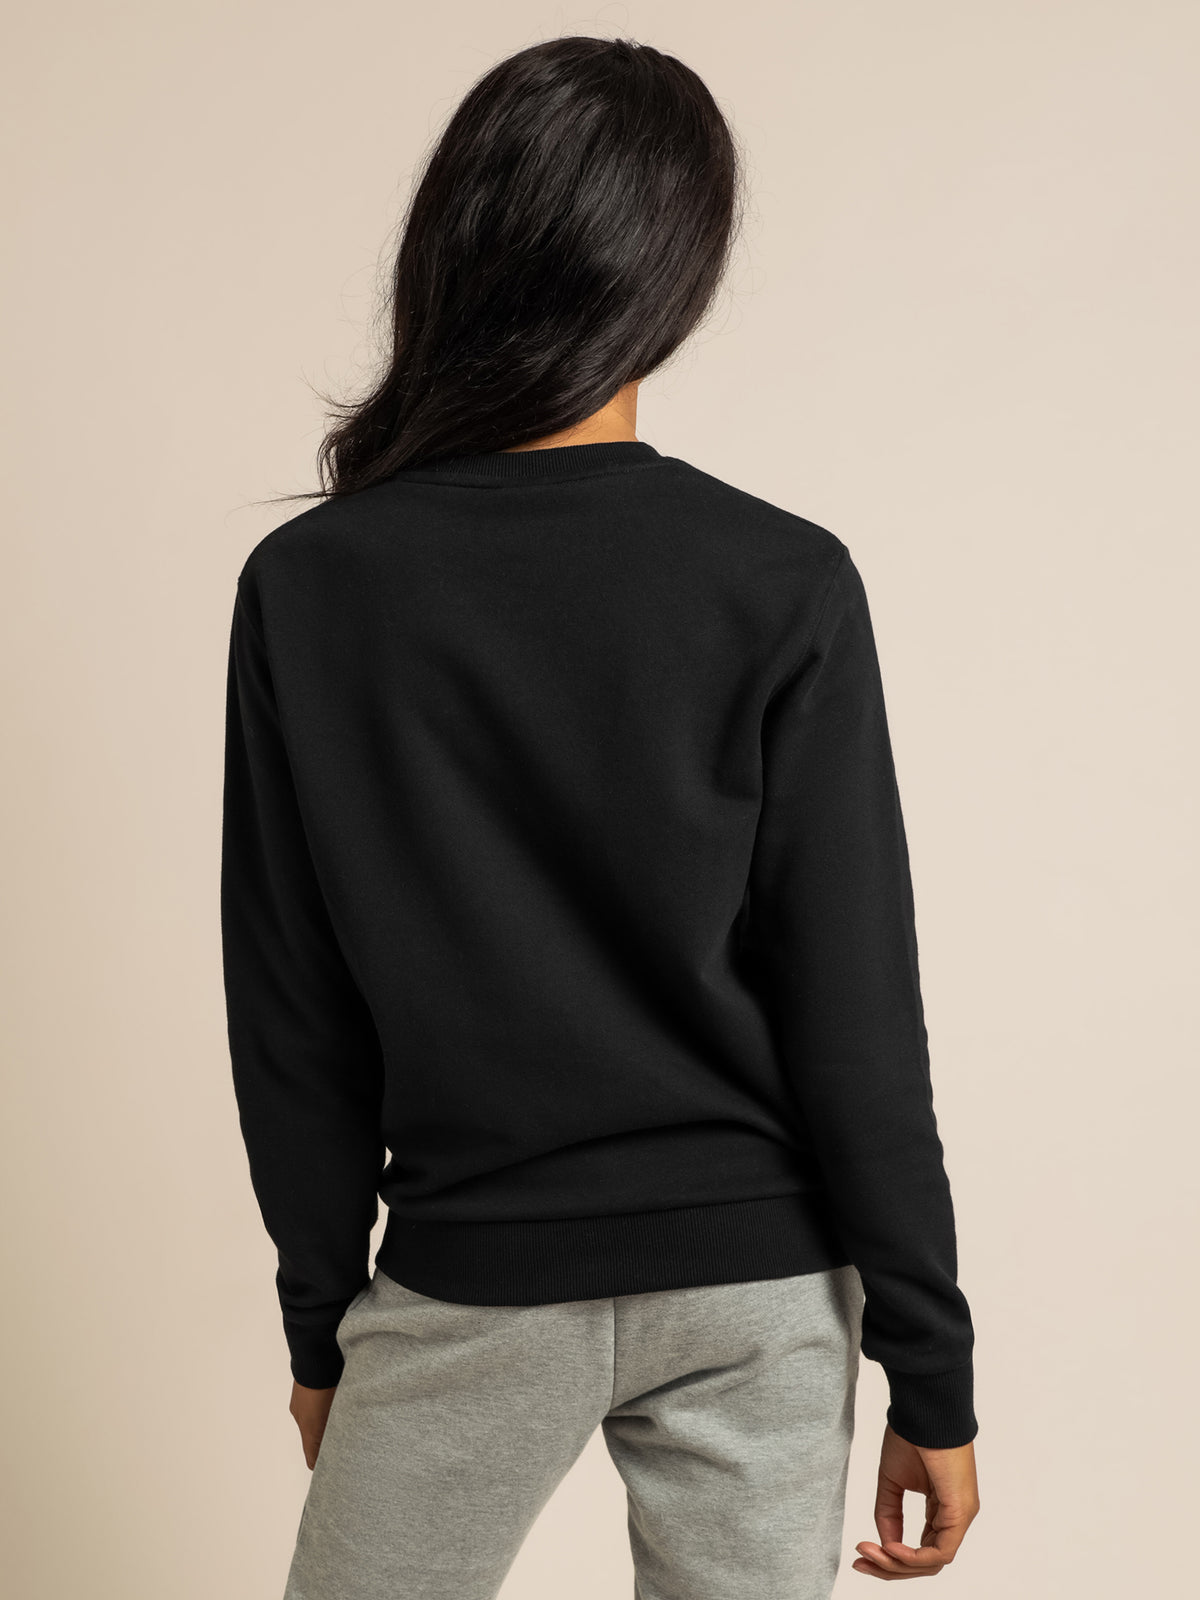 Triome Sweater in Black